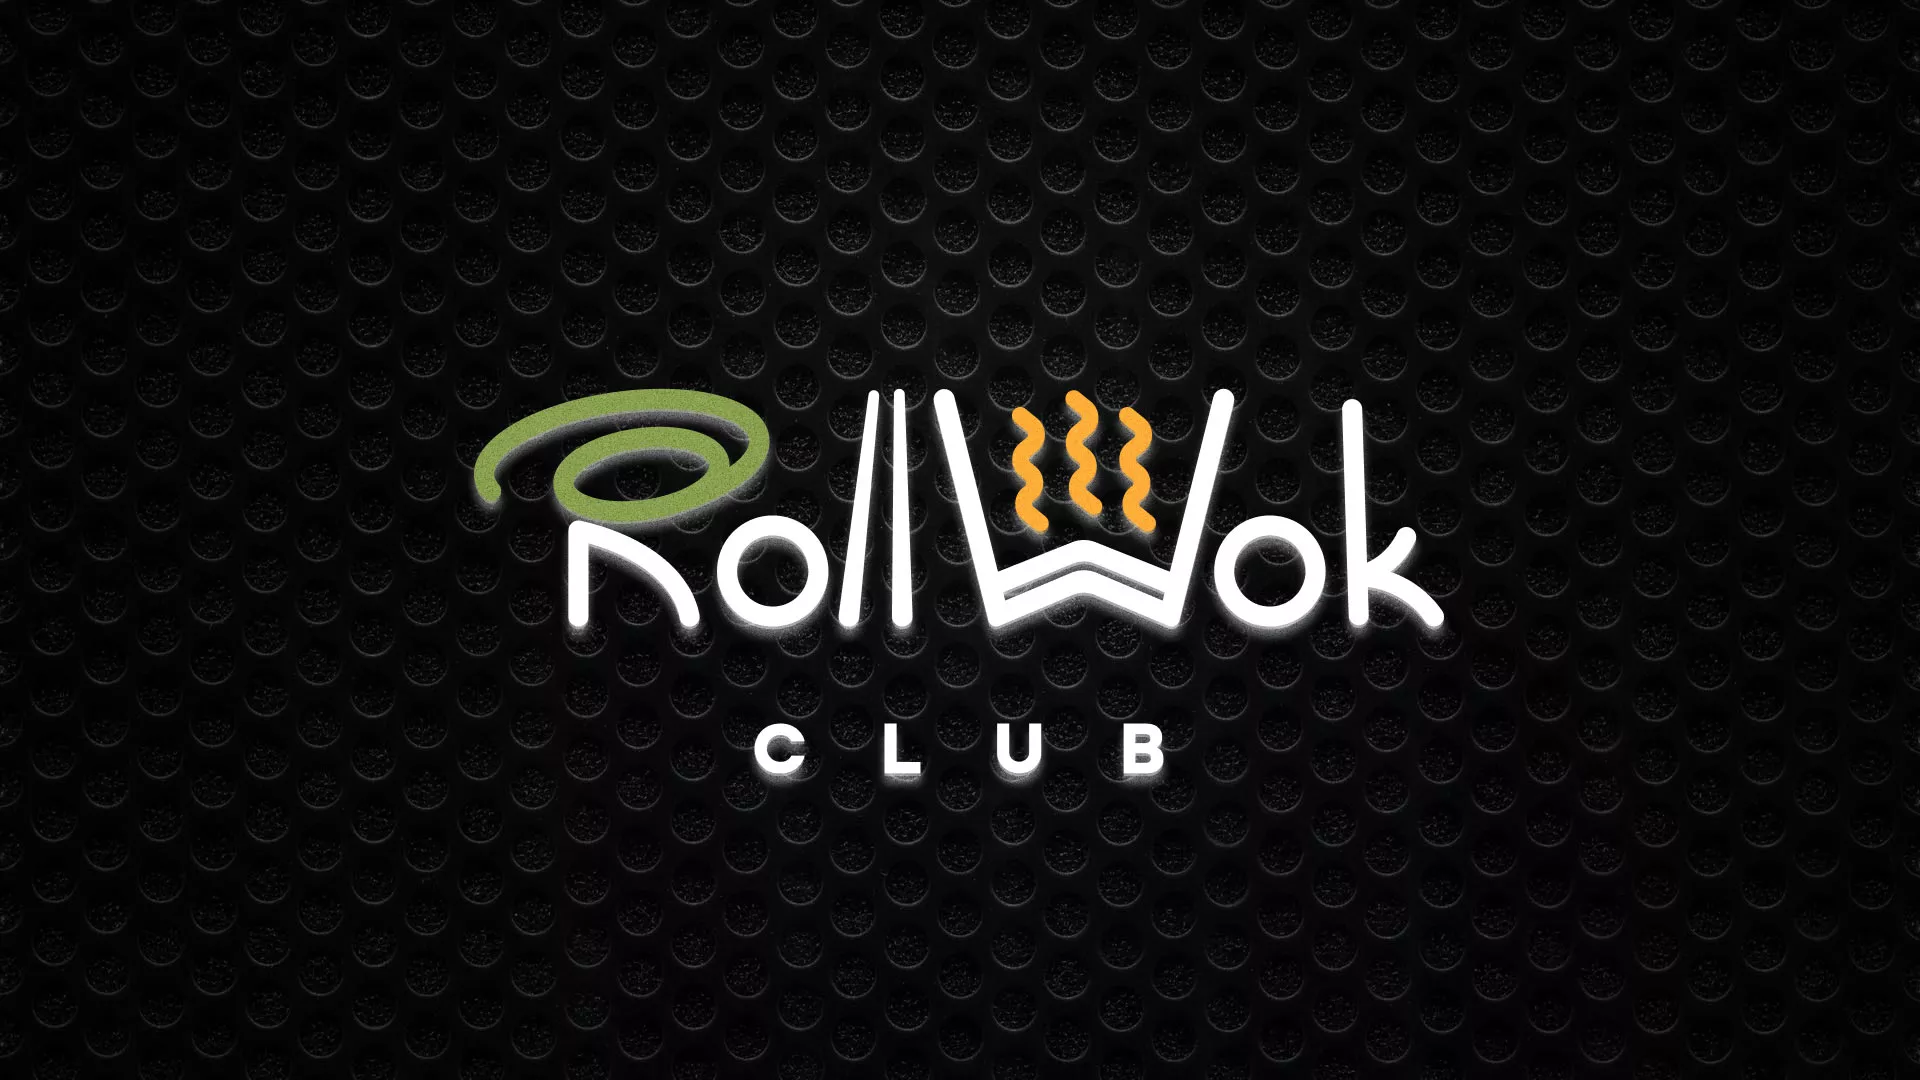 Брендирование торговых точек суши-бара «Roll Wok Club» в Кстово